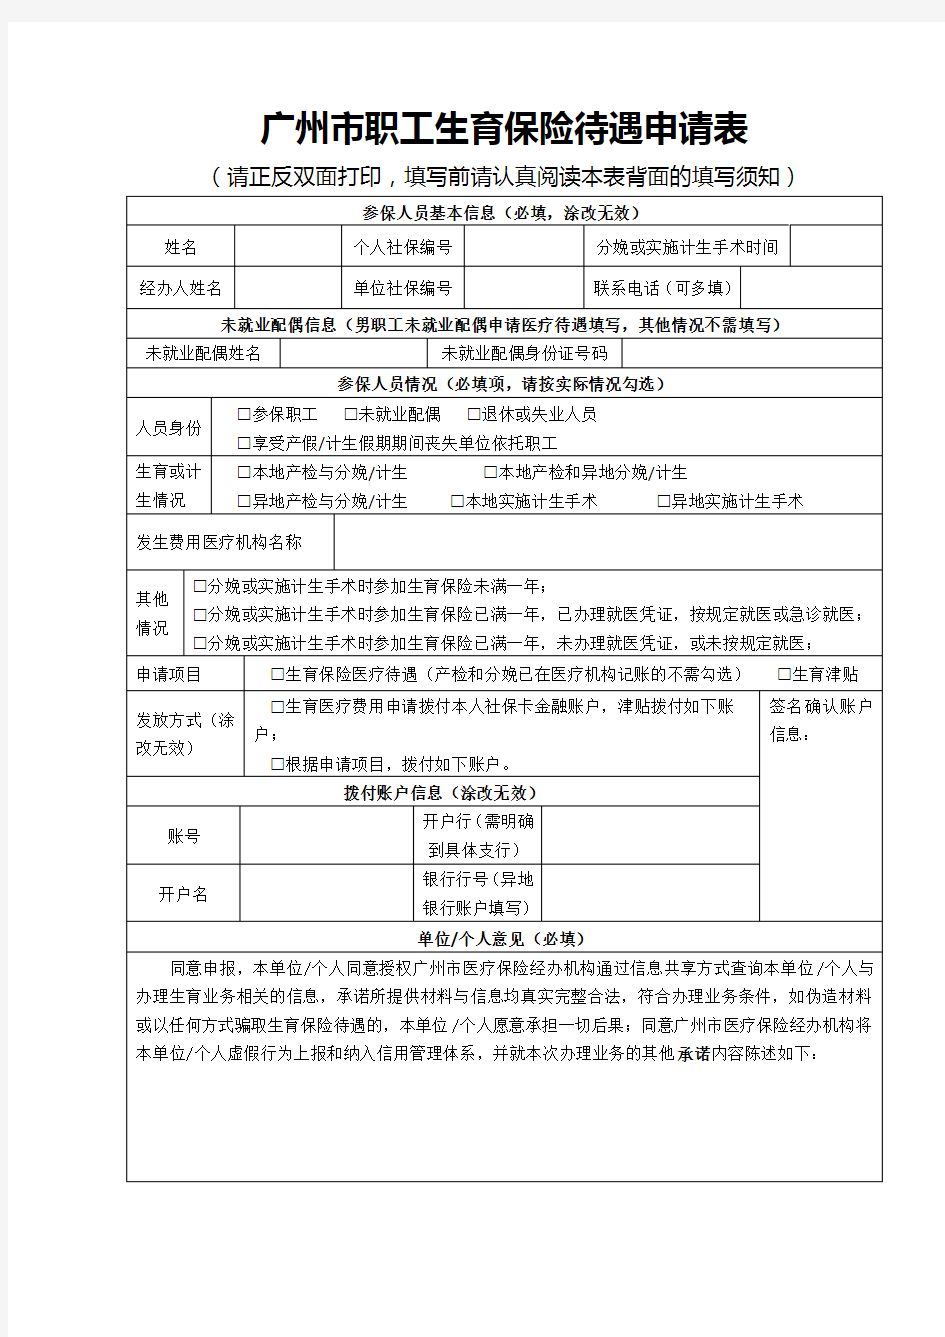 2020年最新版的广州市职工生育保险待遇申请表